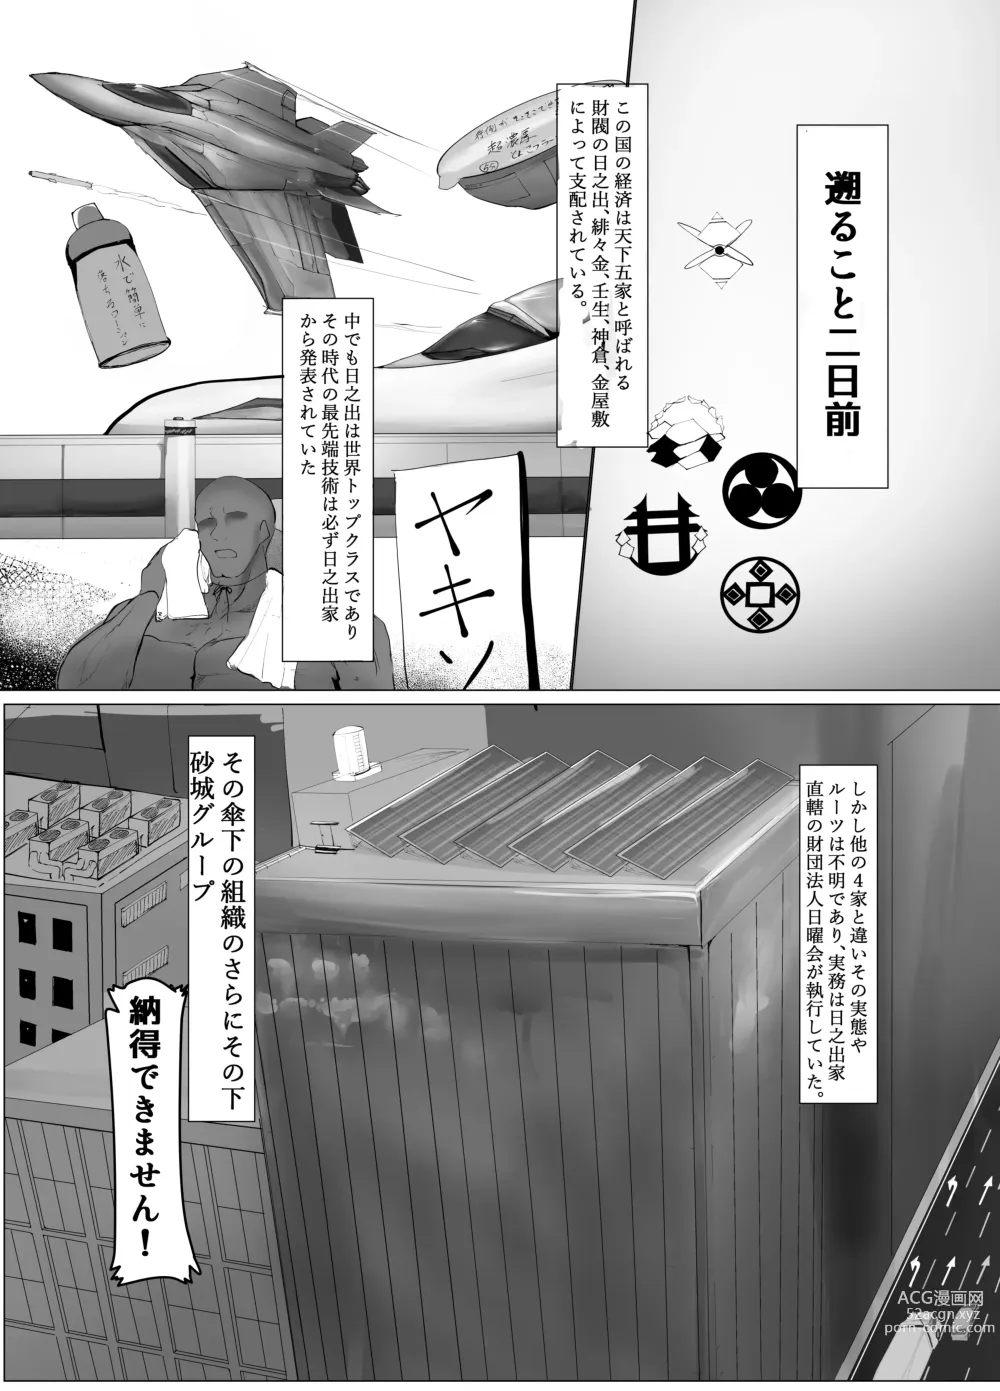 Page 6 of doujinshi Atarashii Kazoku ga Fuemashita!